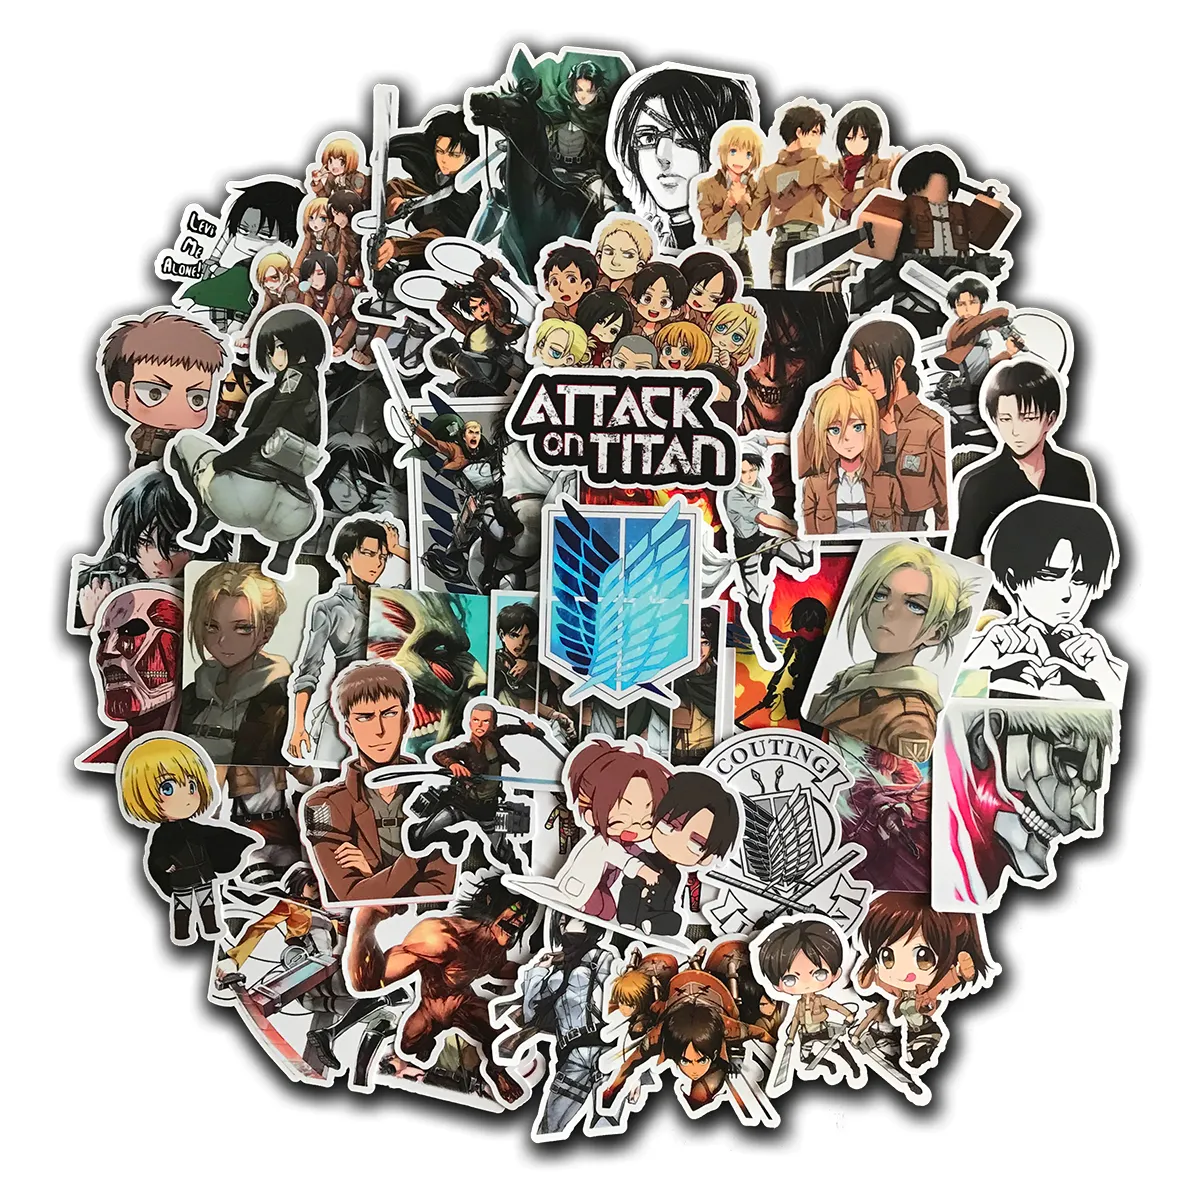 Adesivo à prova d'água Graffiti Stickers Pack Attack on Titan para Laptop Bagagem Motocicleta Vinil Aleatório Anime Adesivo Bomba AOT Engraçado Cool Decalques Adesivos de carro